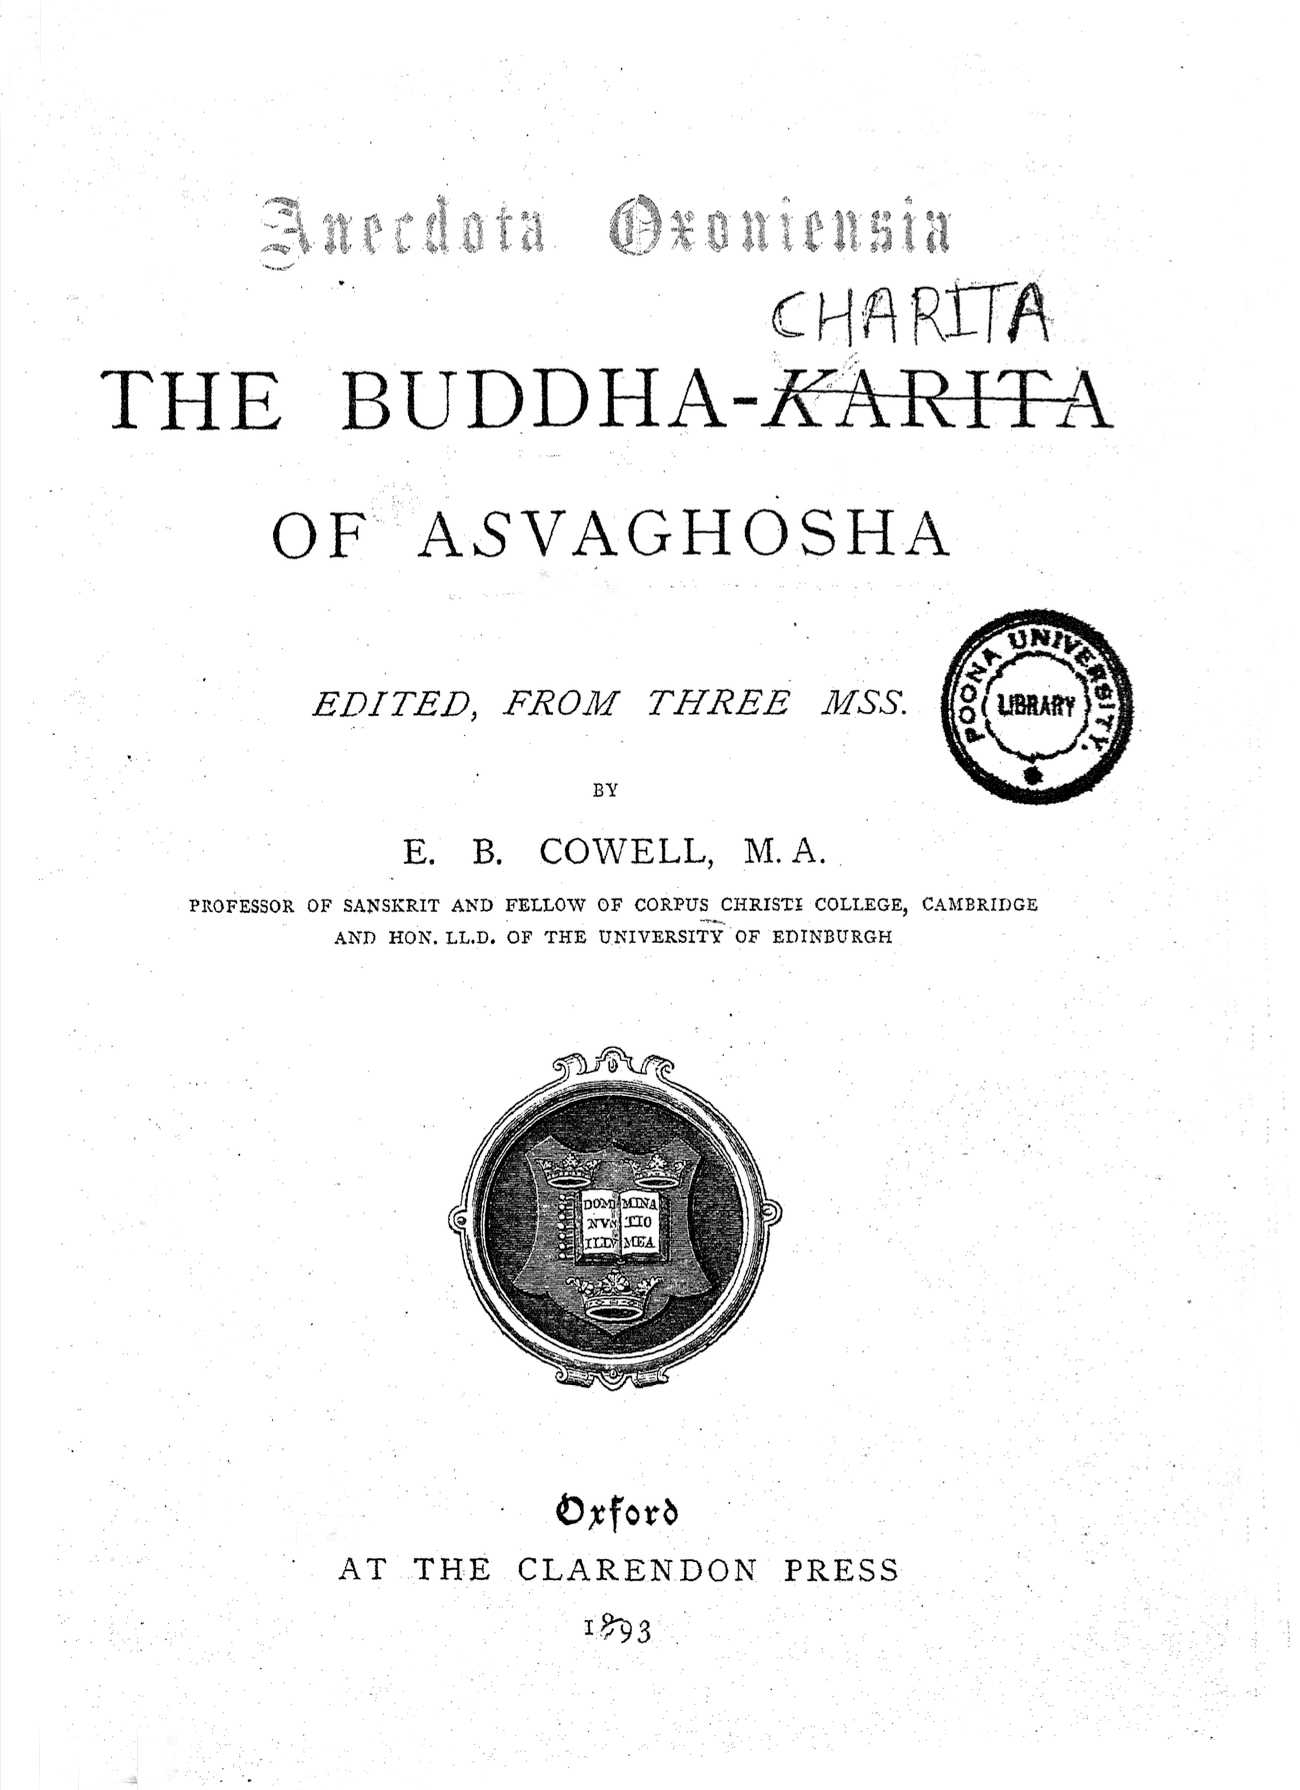 The Buddha-Karita of Asvaghosha Cowell 1893-front.jpg